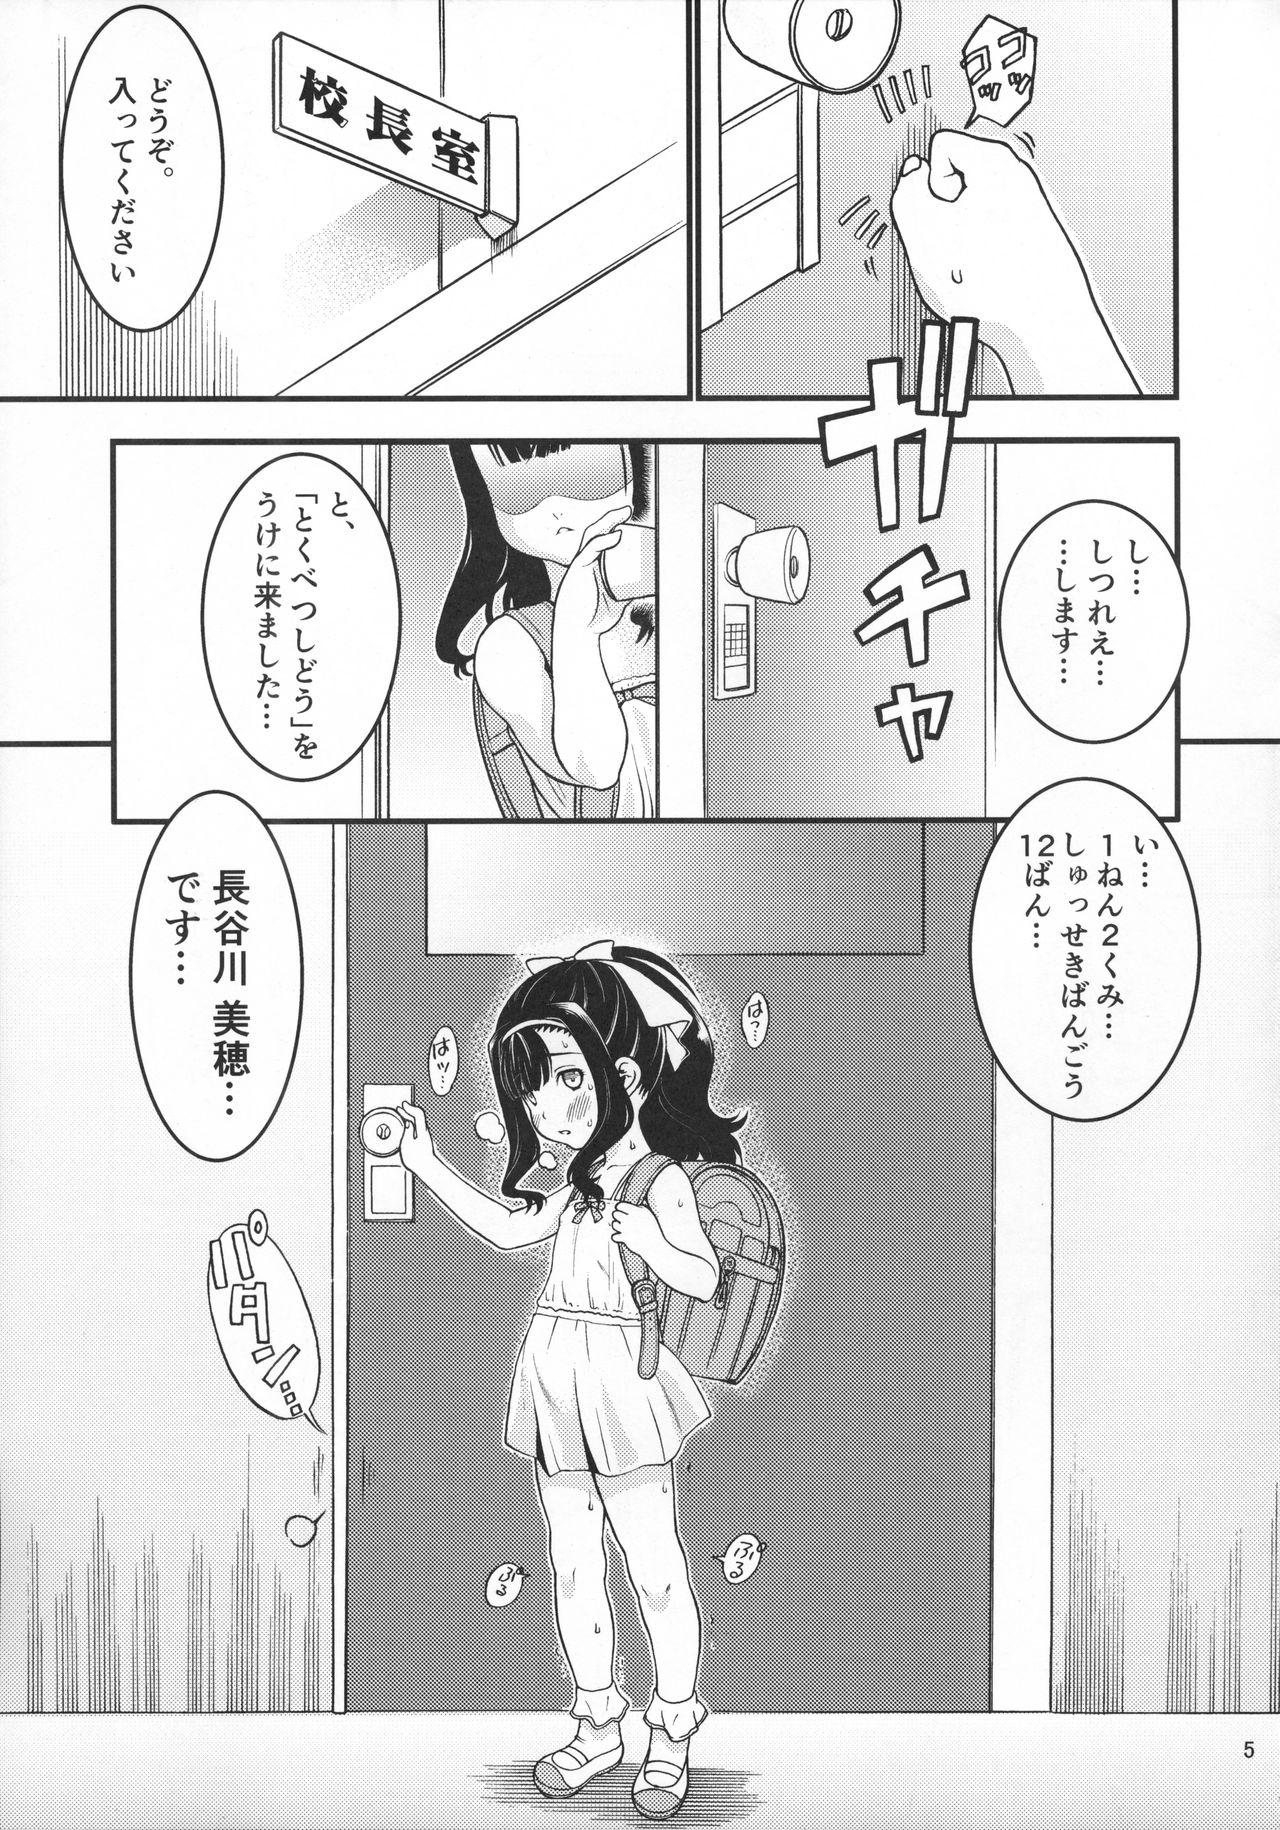 Perrito Heisei 29-nendo Tokushu Ginou Yuushuu Seito Shidou Youkou Coroa - Page 7